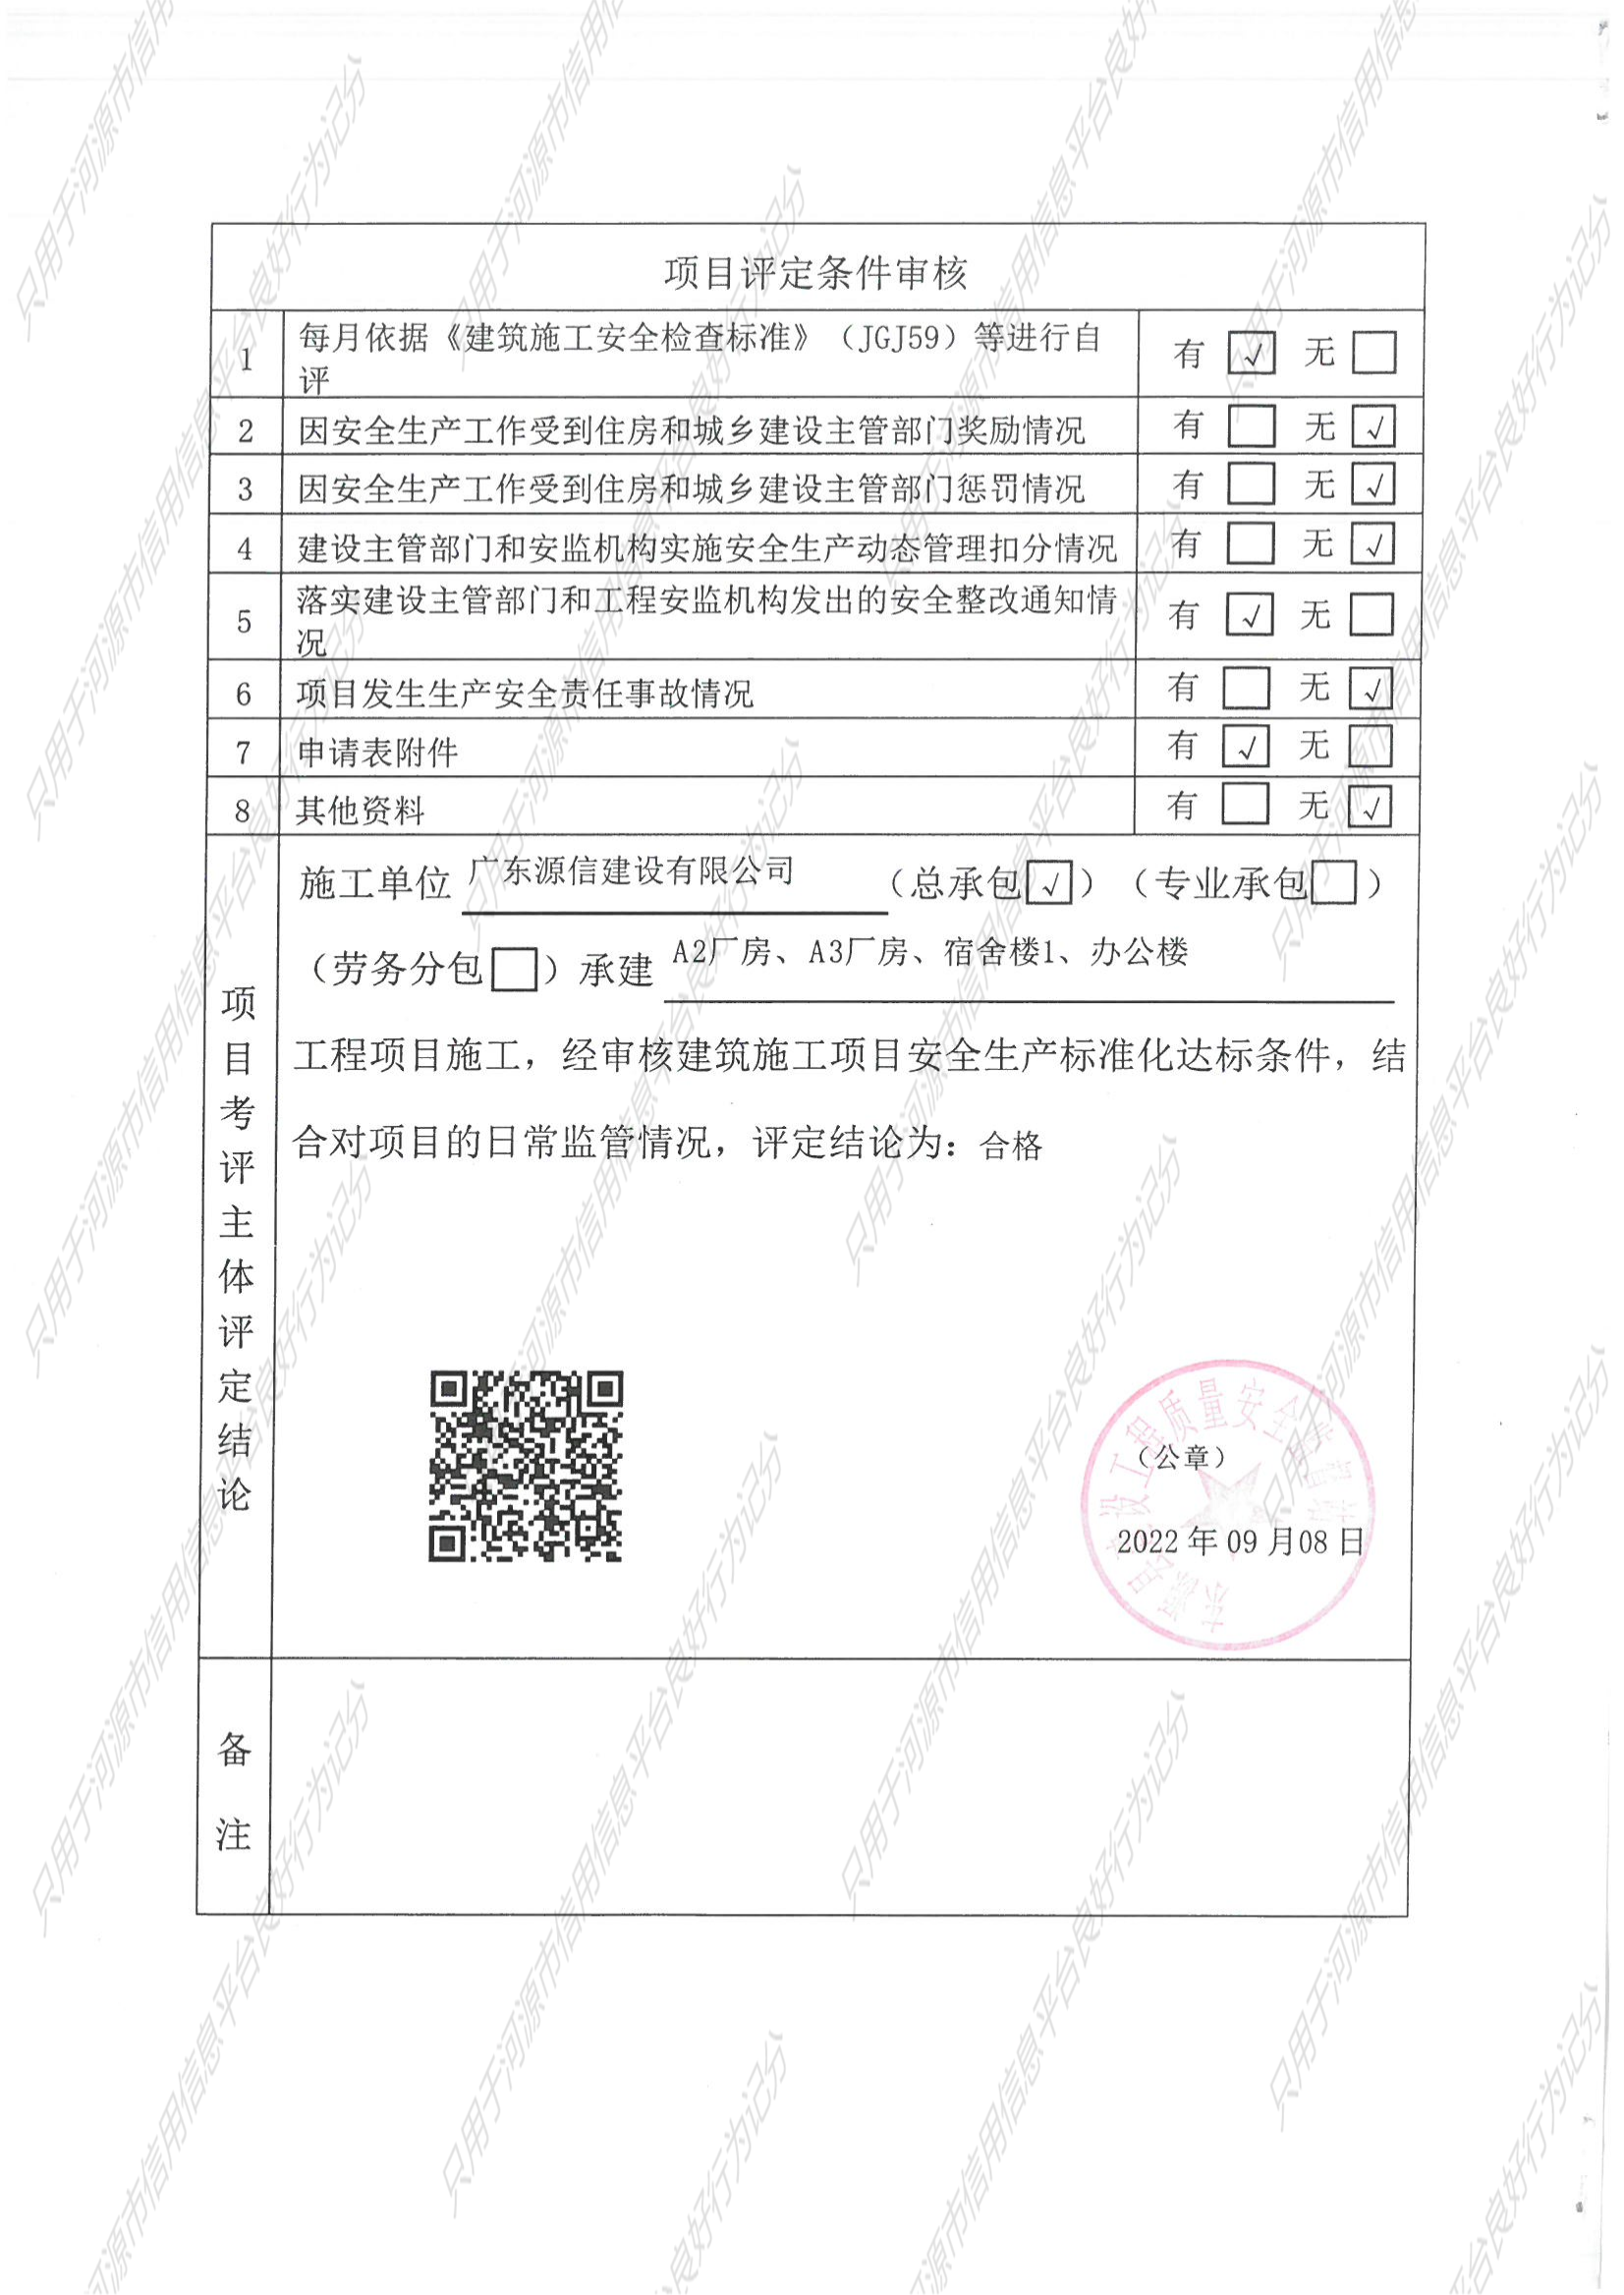 广东省建筑施工项目安全生产标准化评定结果告知书_03